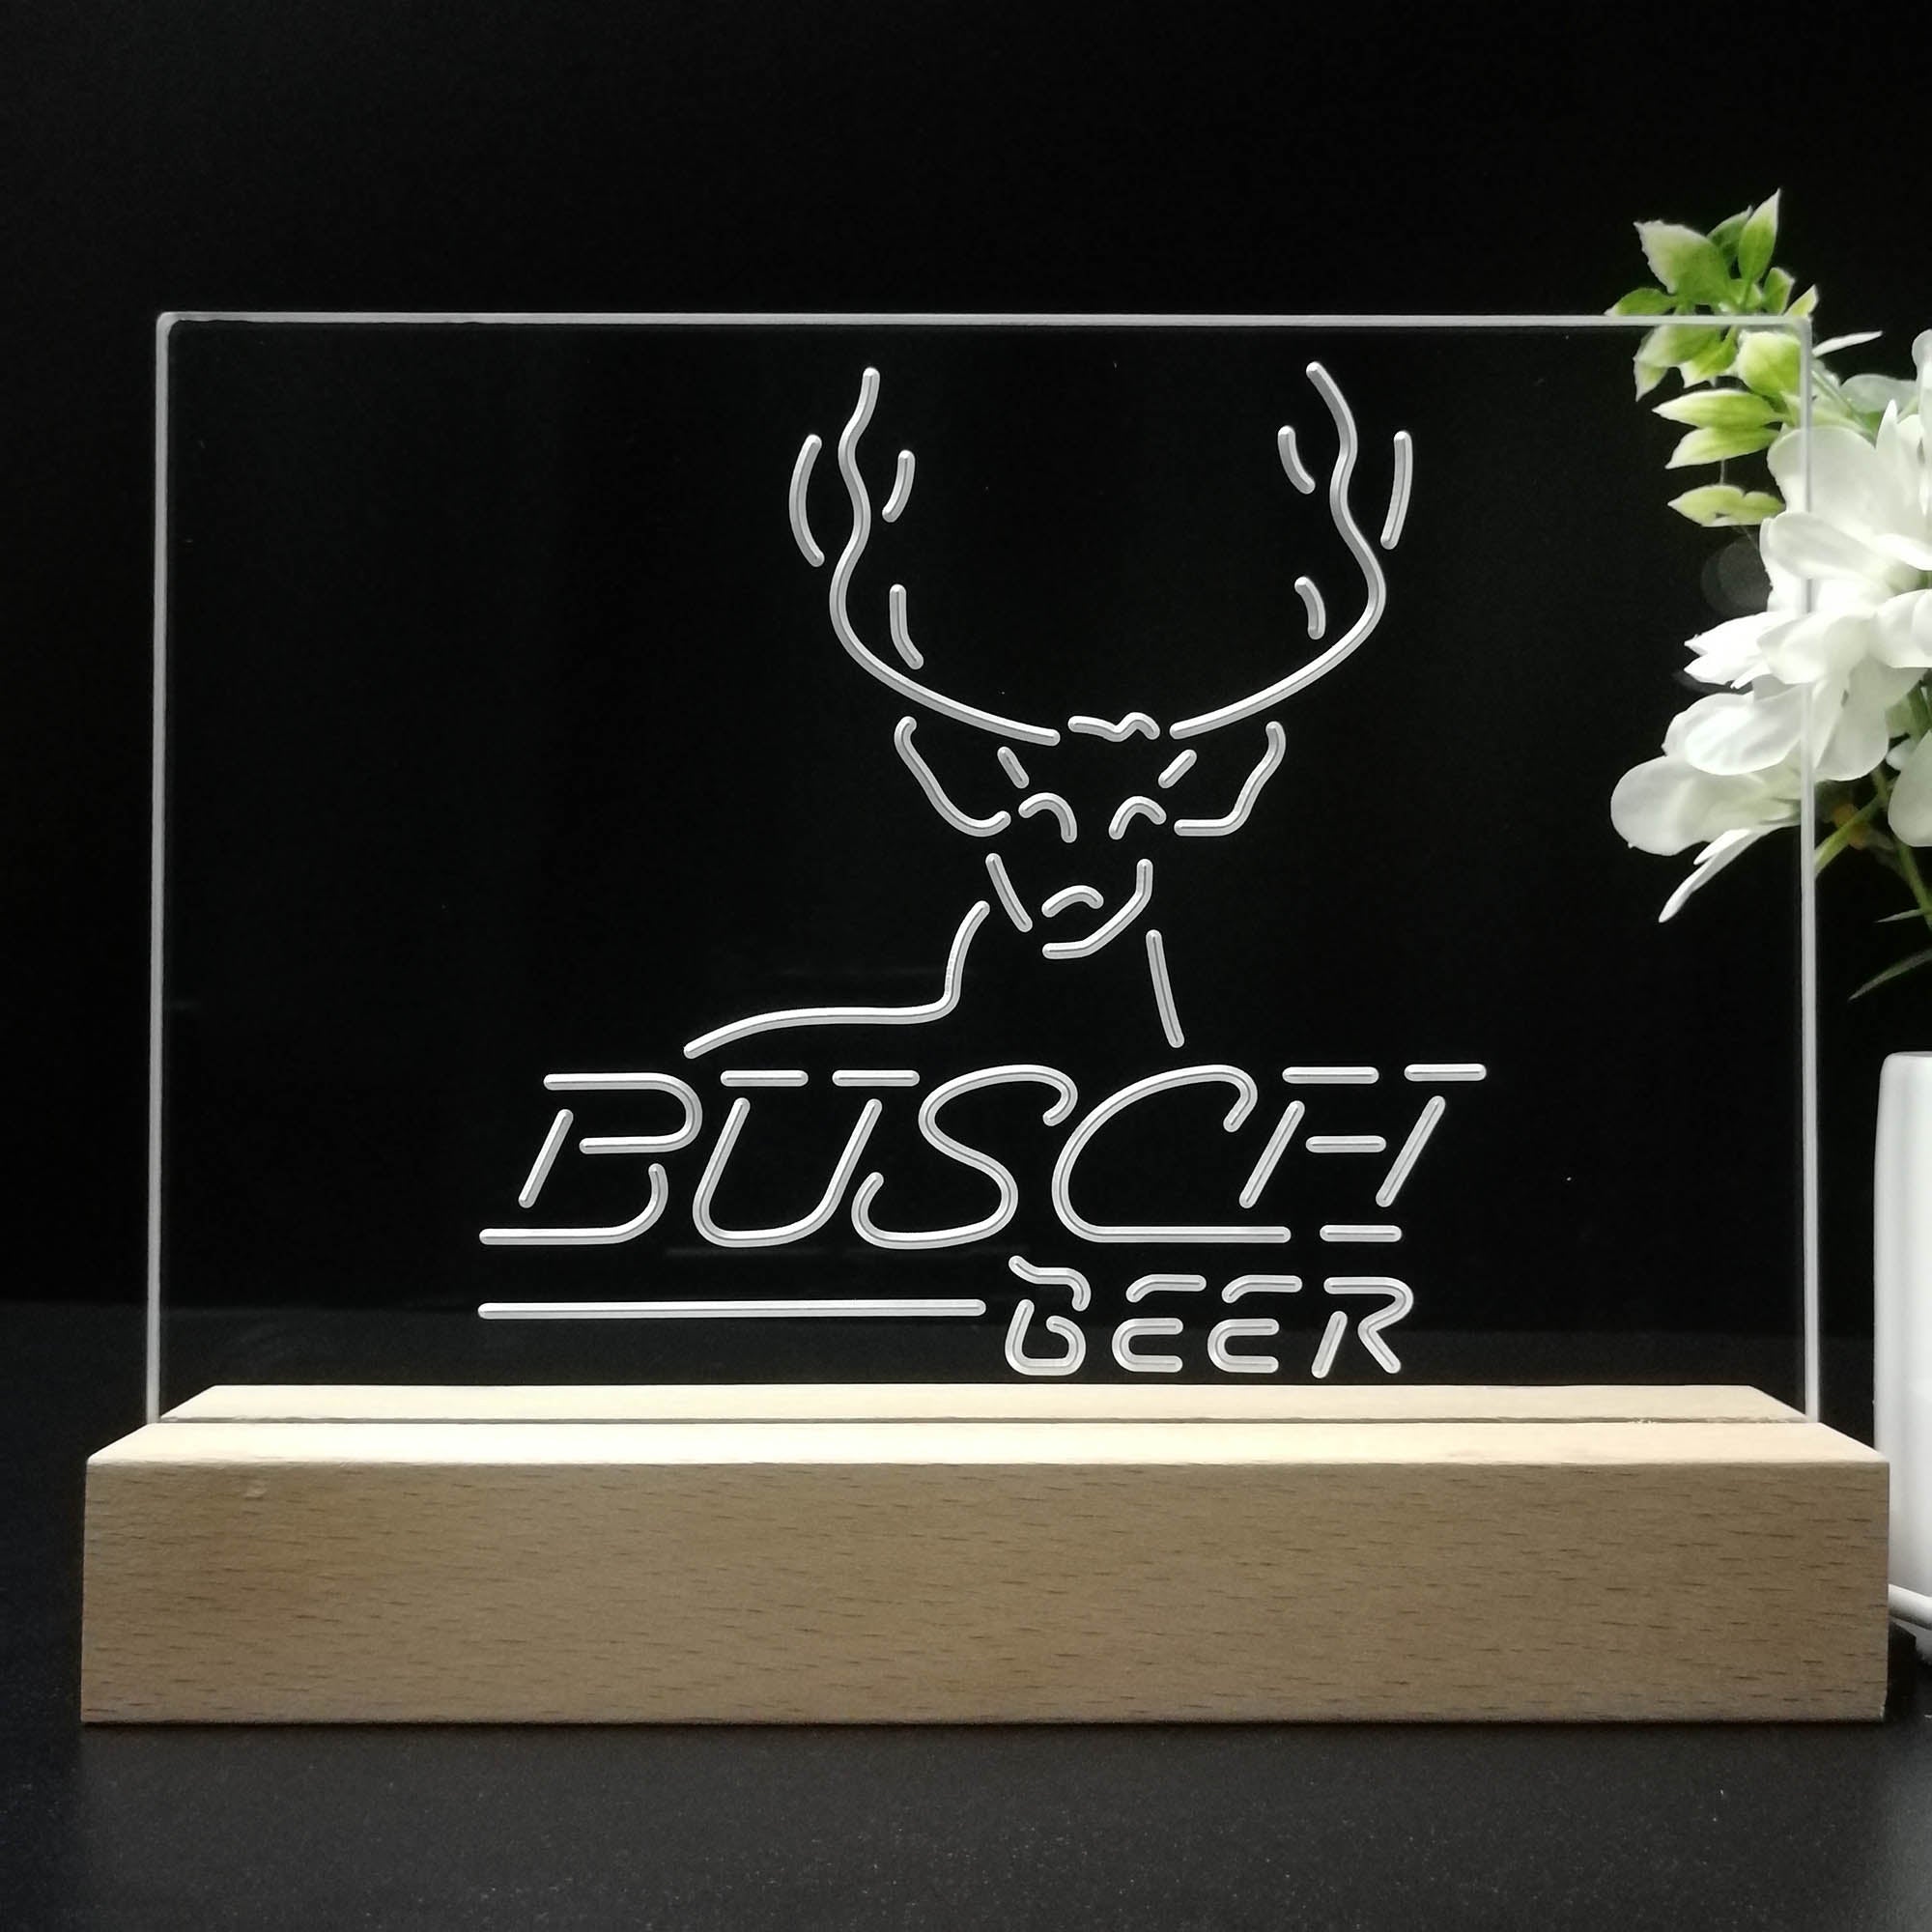 Buschs Beer Cabin Deer Hunt Night Light LED Sign